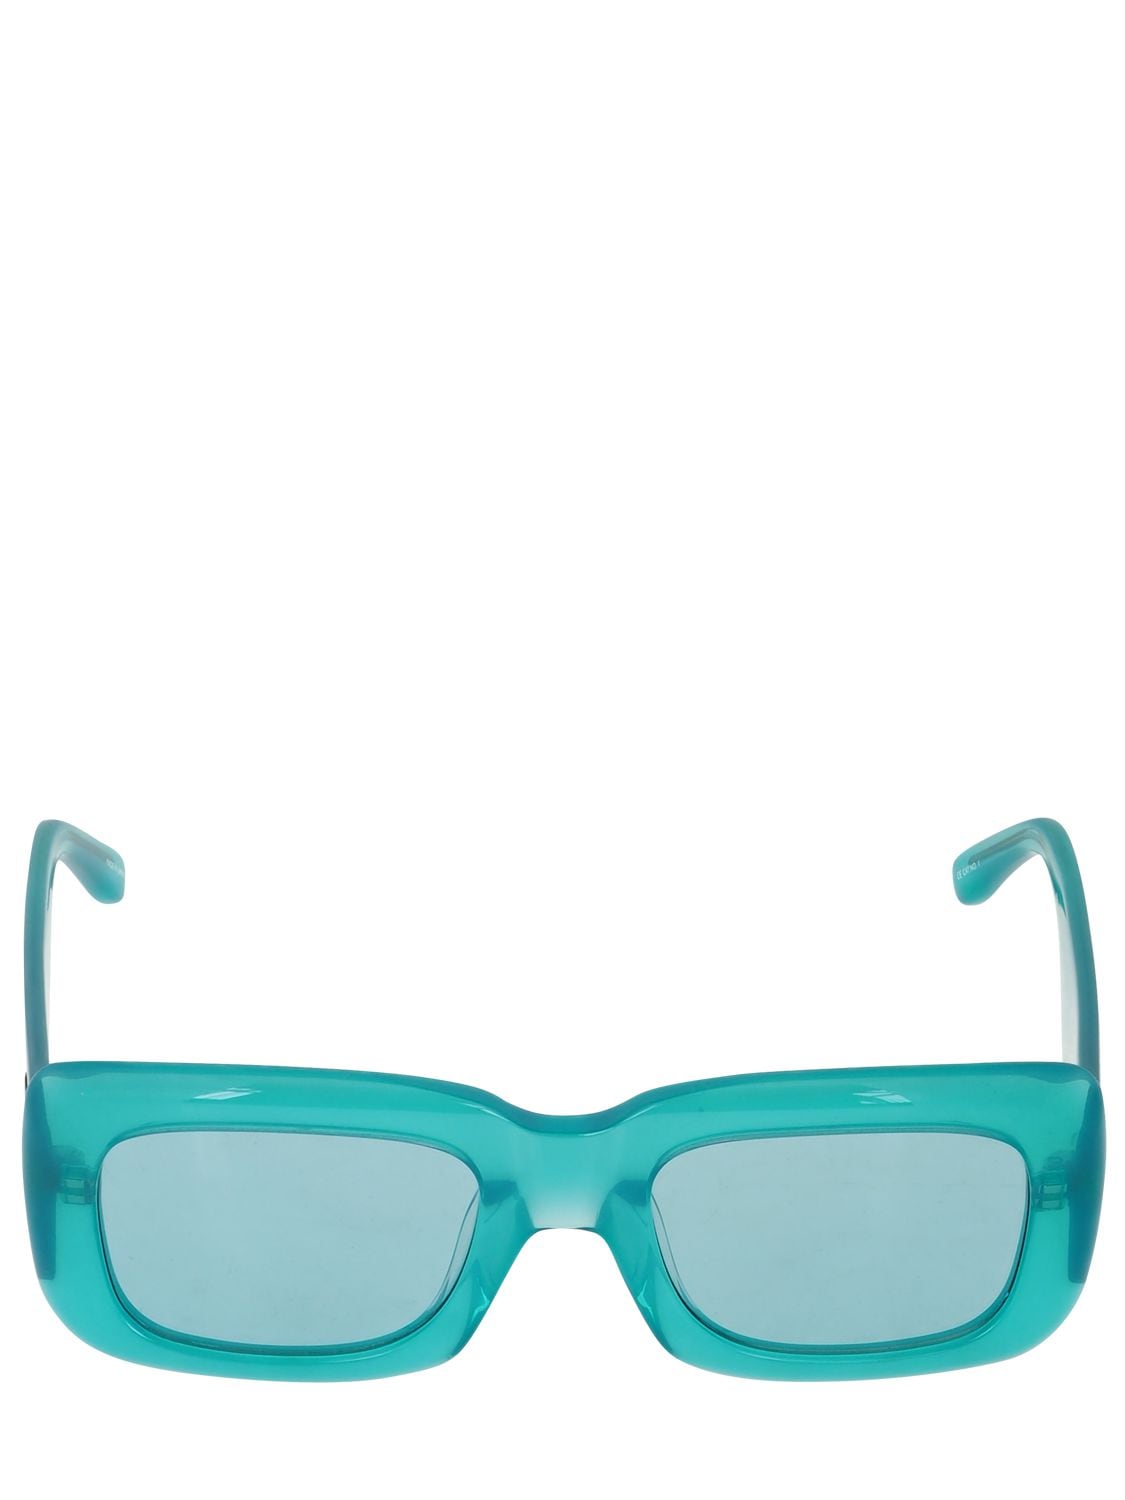 Attico Marfa Acetate Squared Sunglasses In Mint